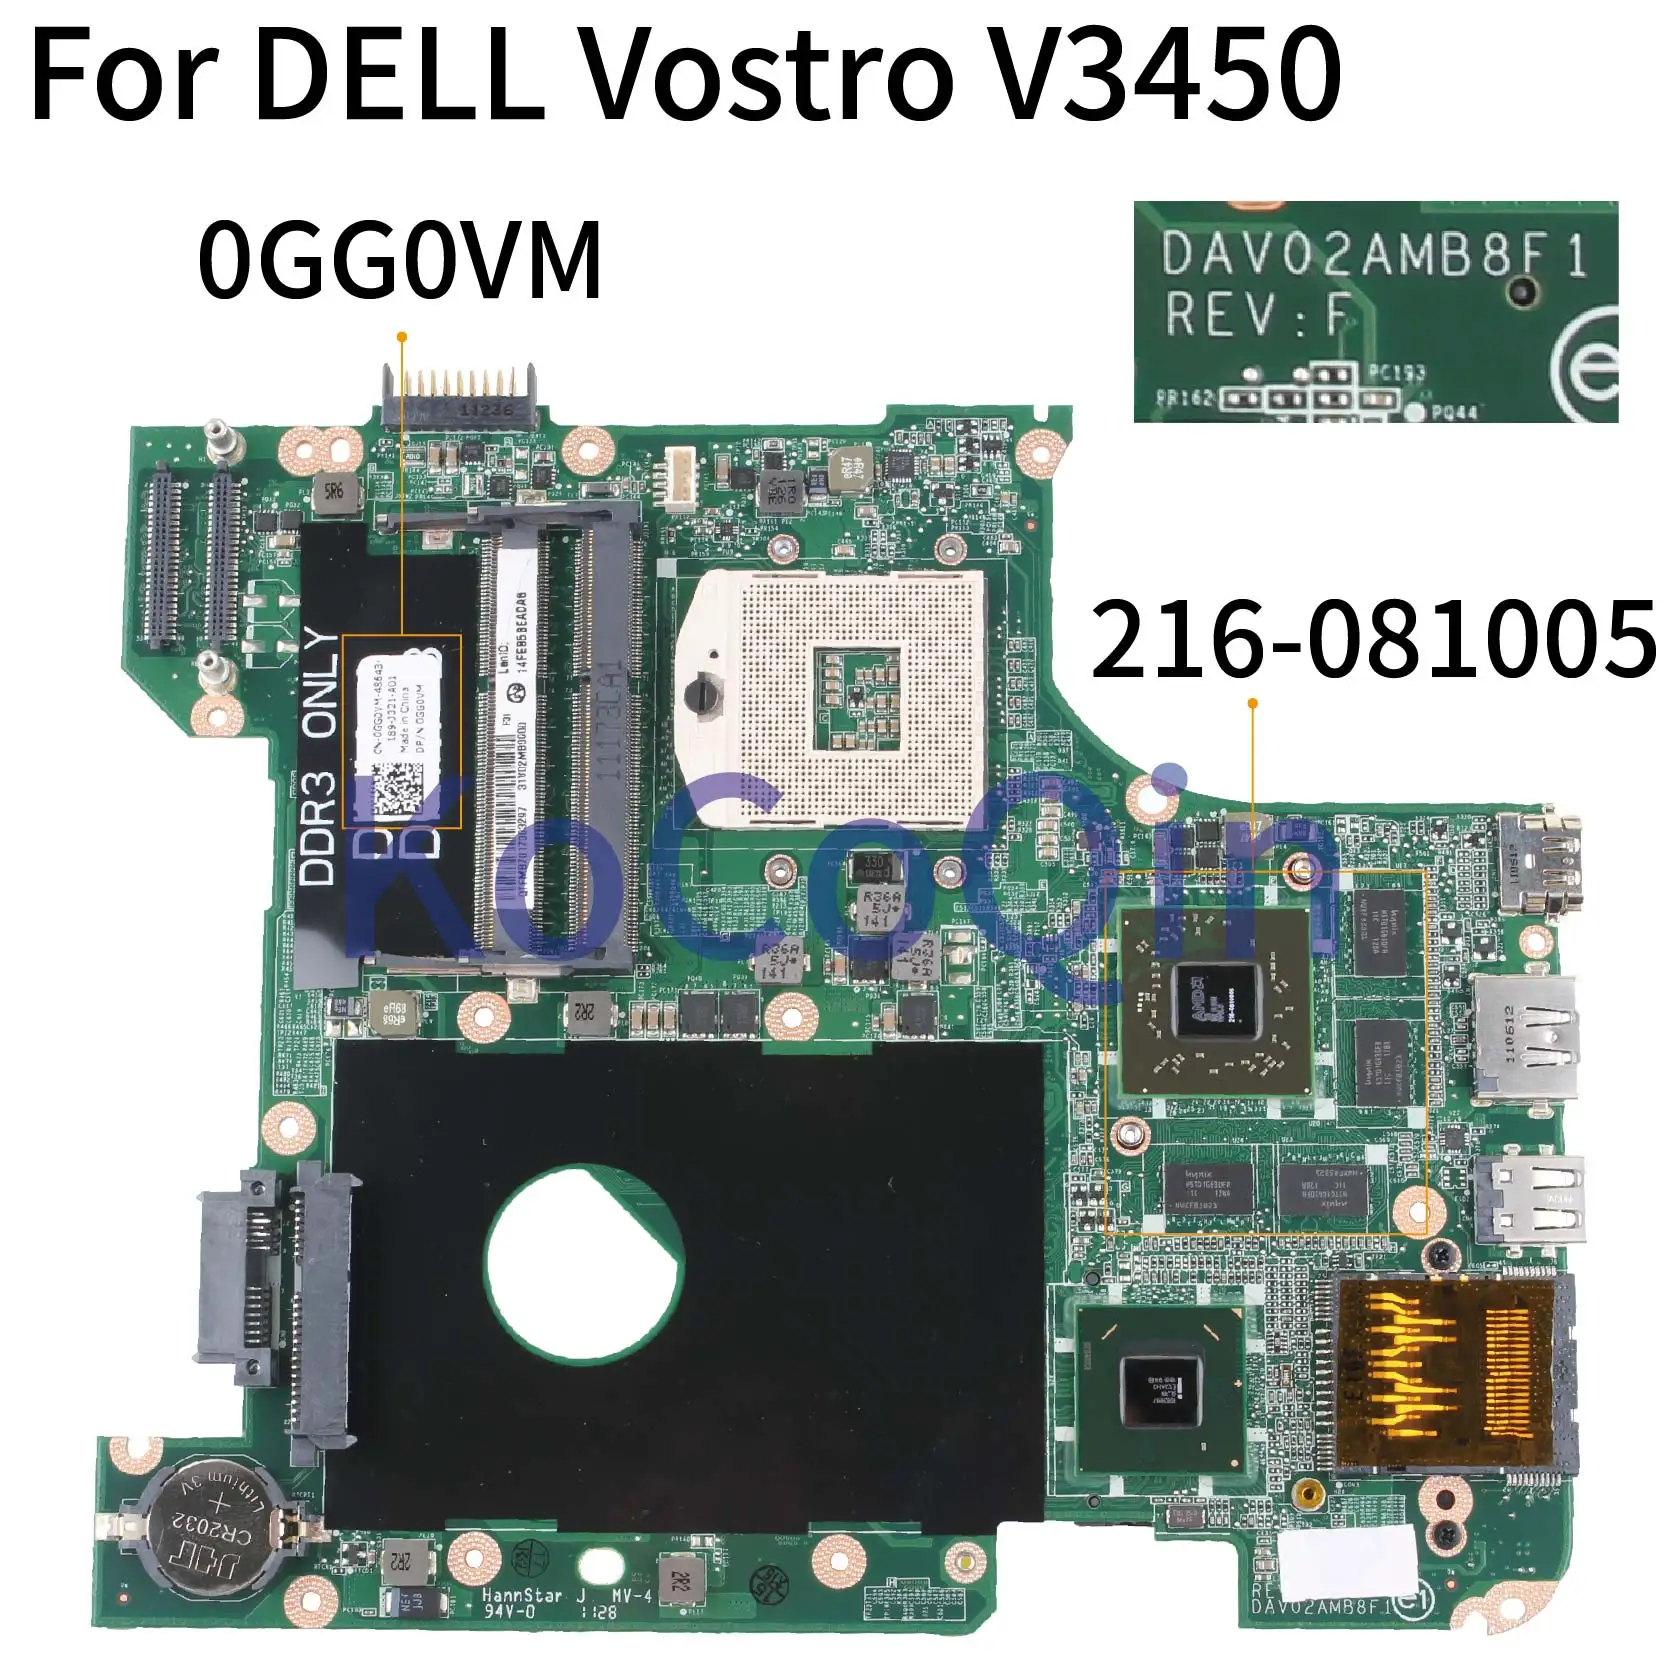 KoCoQin материнская плата для ноутбука DELL Vostro 3450 V3450 HD6650M материнская плата CN-0GG0VM 0GG0VM DAV02AMB8F0 216-0810005 HM67